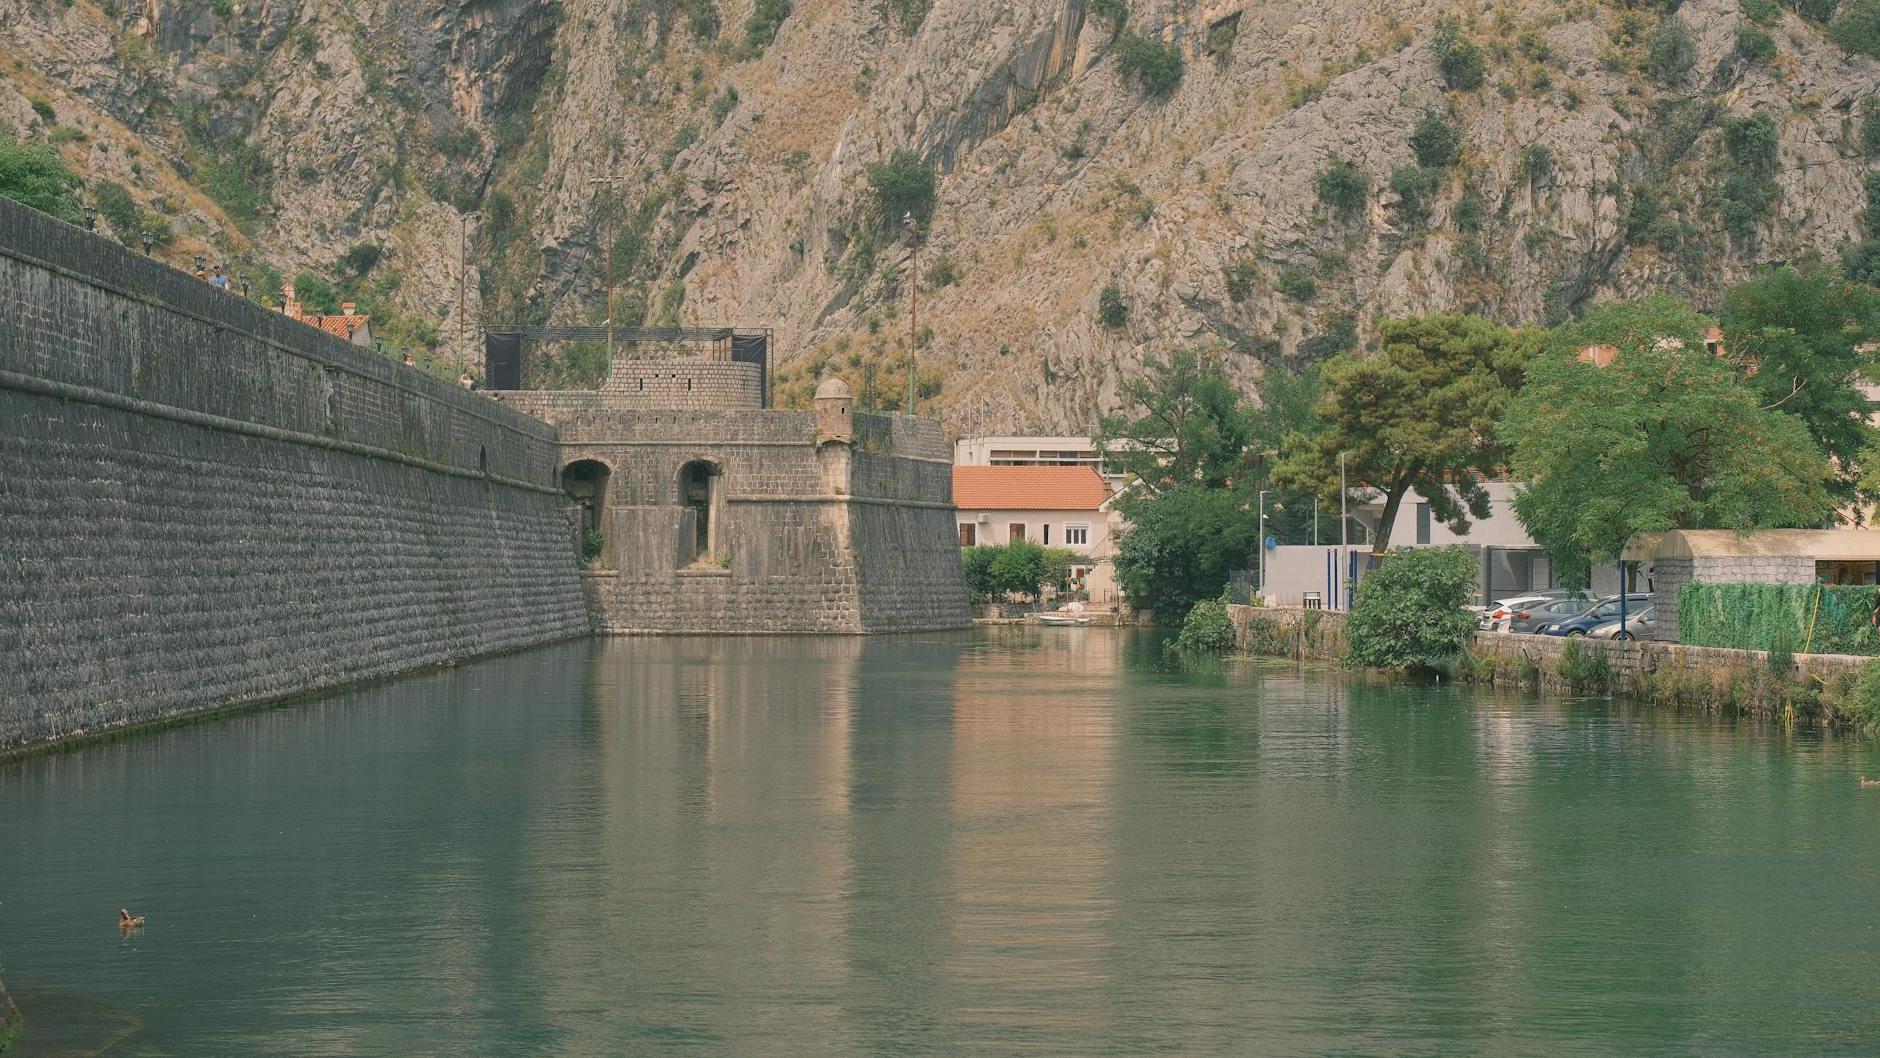 Bembo Bastion on Škurda River in Kotor, Montenegro